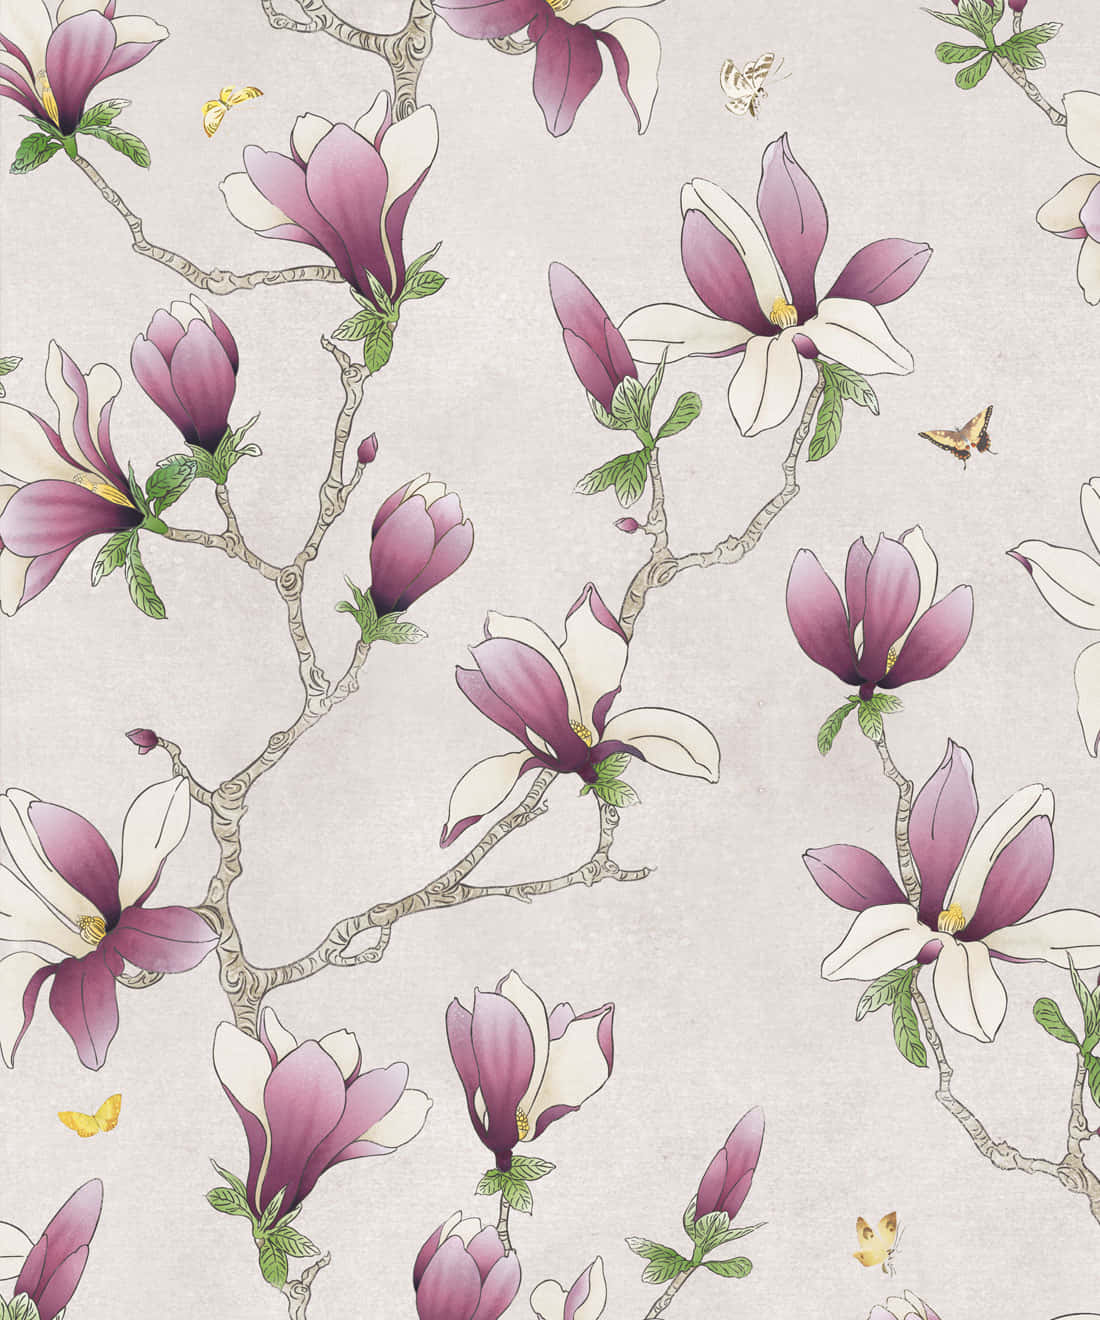 Diseñoartístico De Patrón De Flores De Magnolia Fondo de pantalla